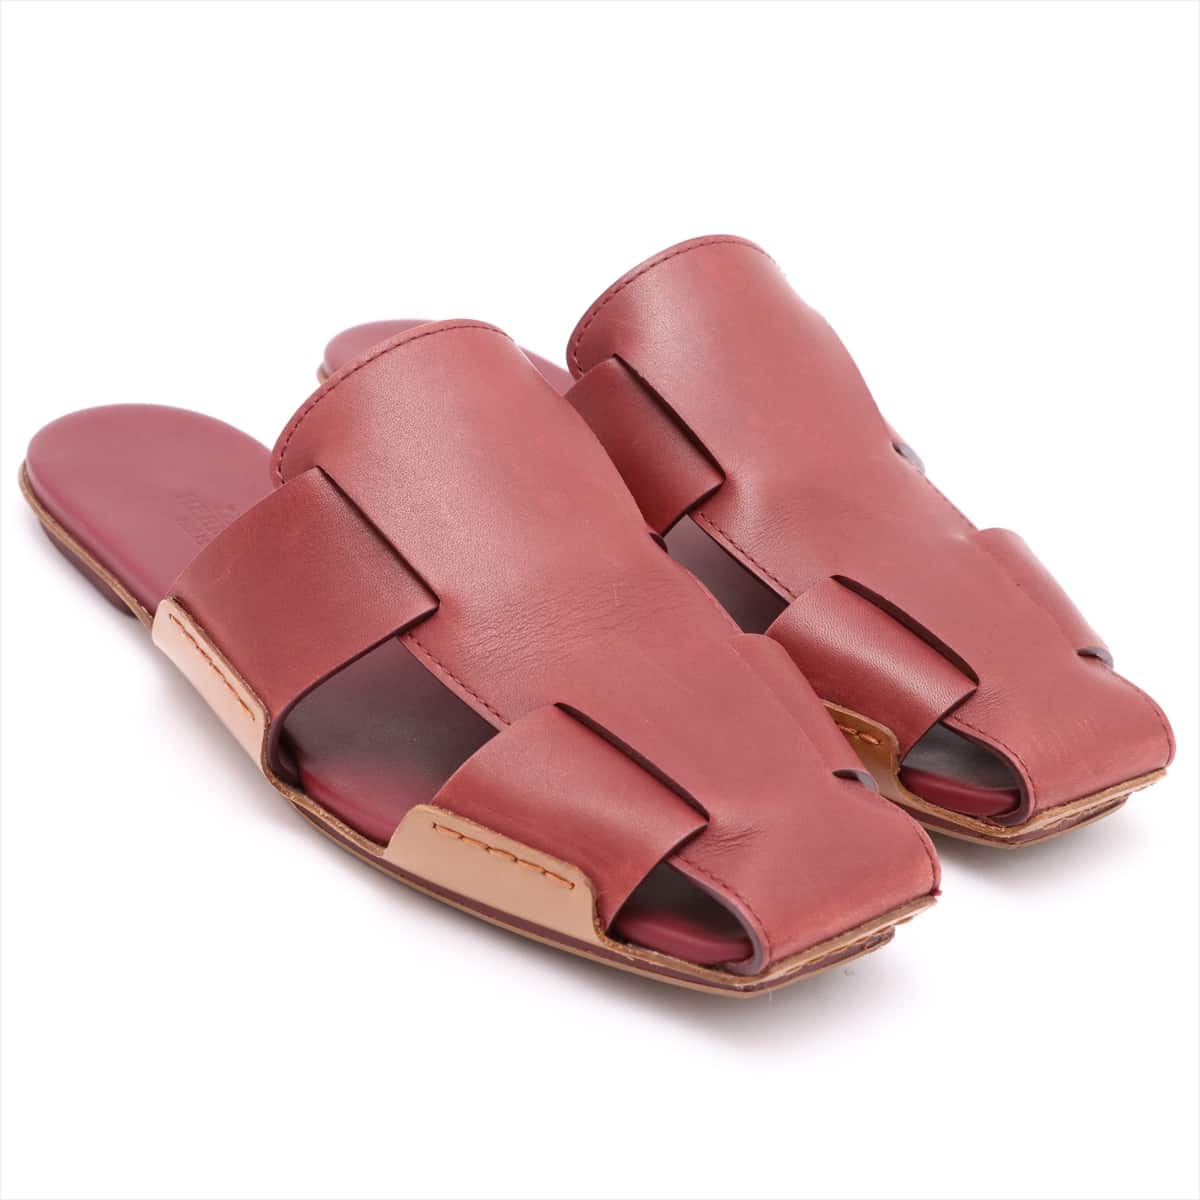 Hermès Leather Sandals 37.5 Ladies' Bordeaux Has half rubber